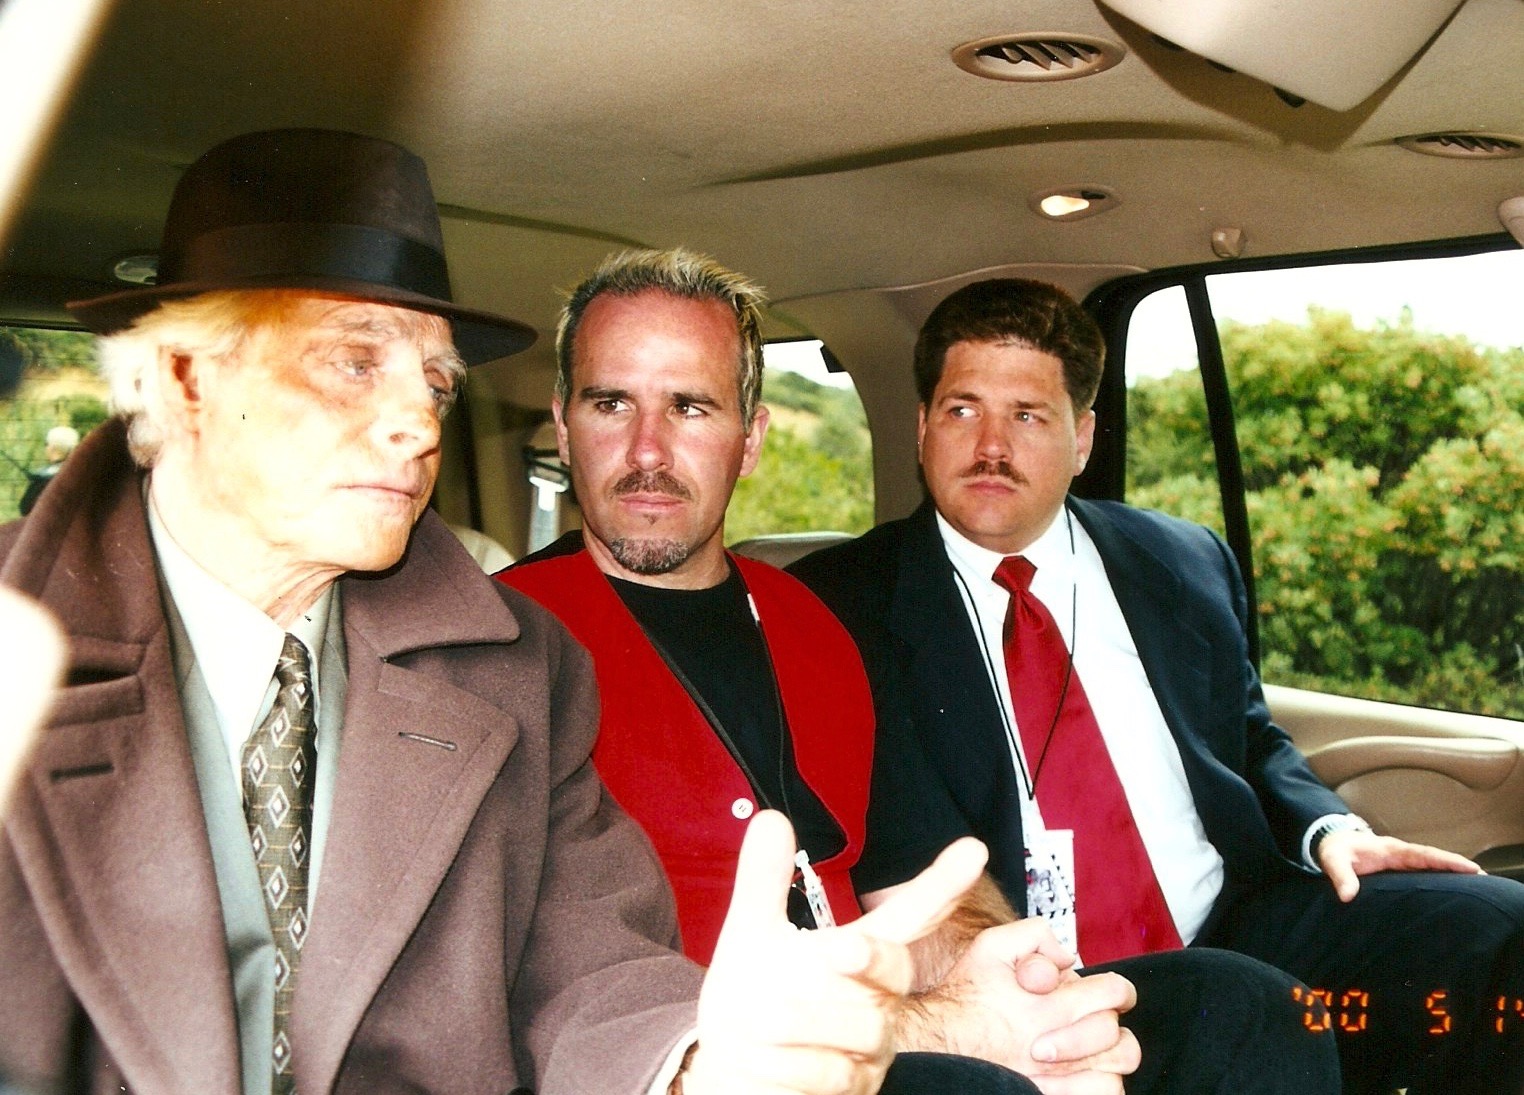 Richard Lynch, Shawn Flanagan and Dan L. Connolly. The Friggin' Mafia Movie - 2001